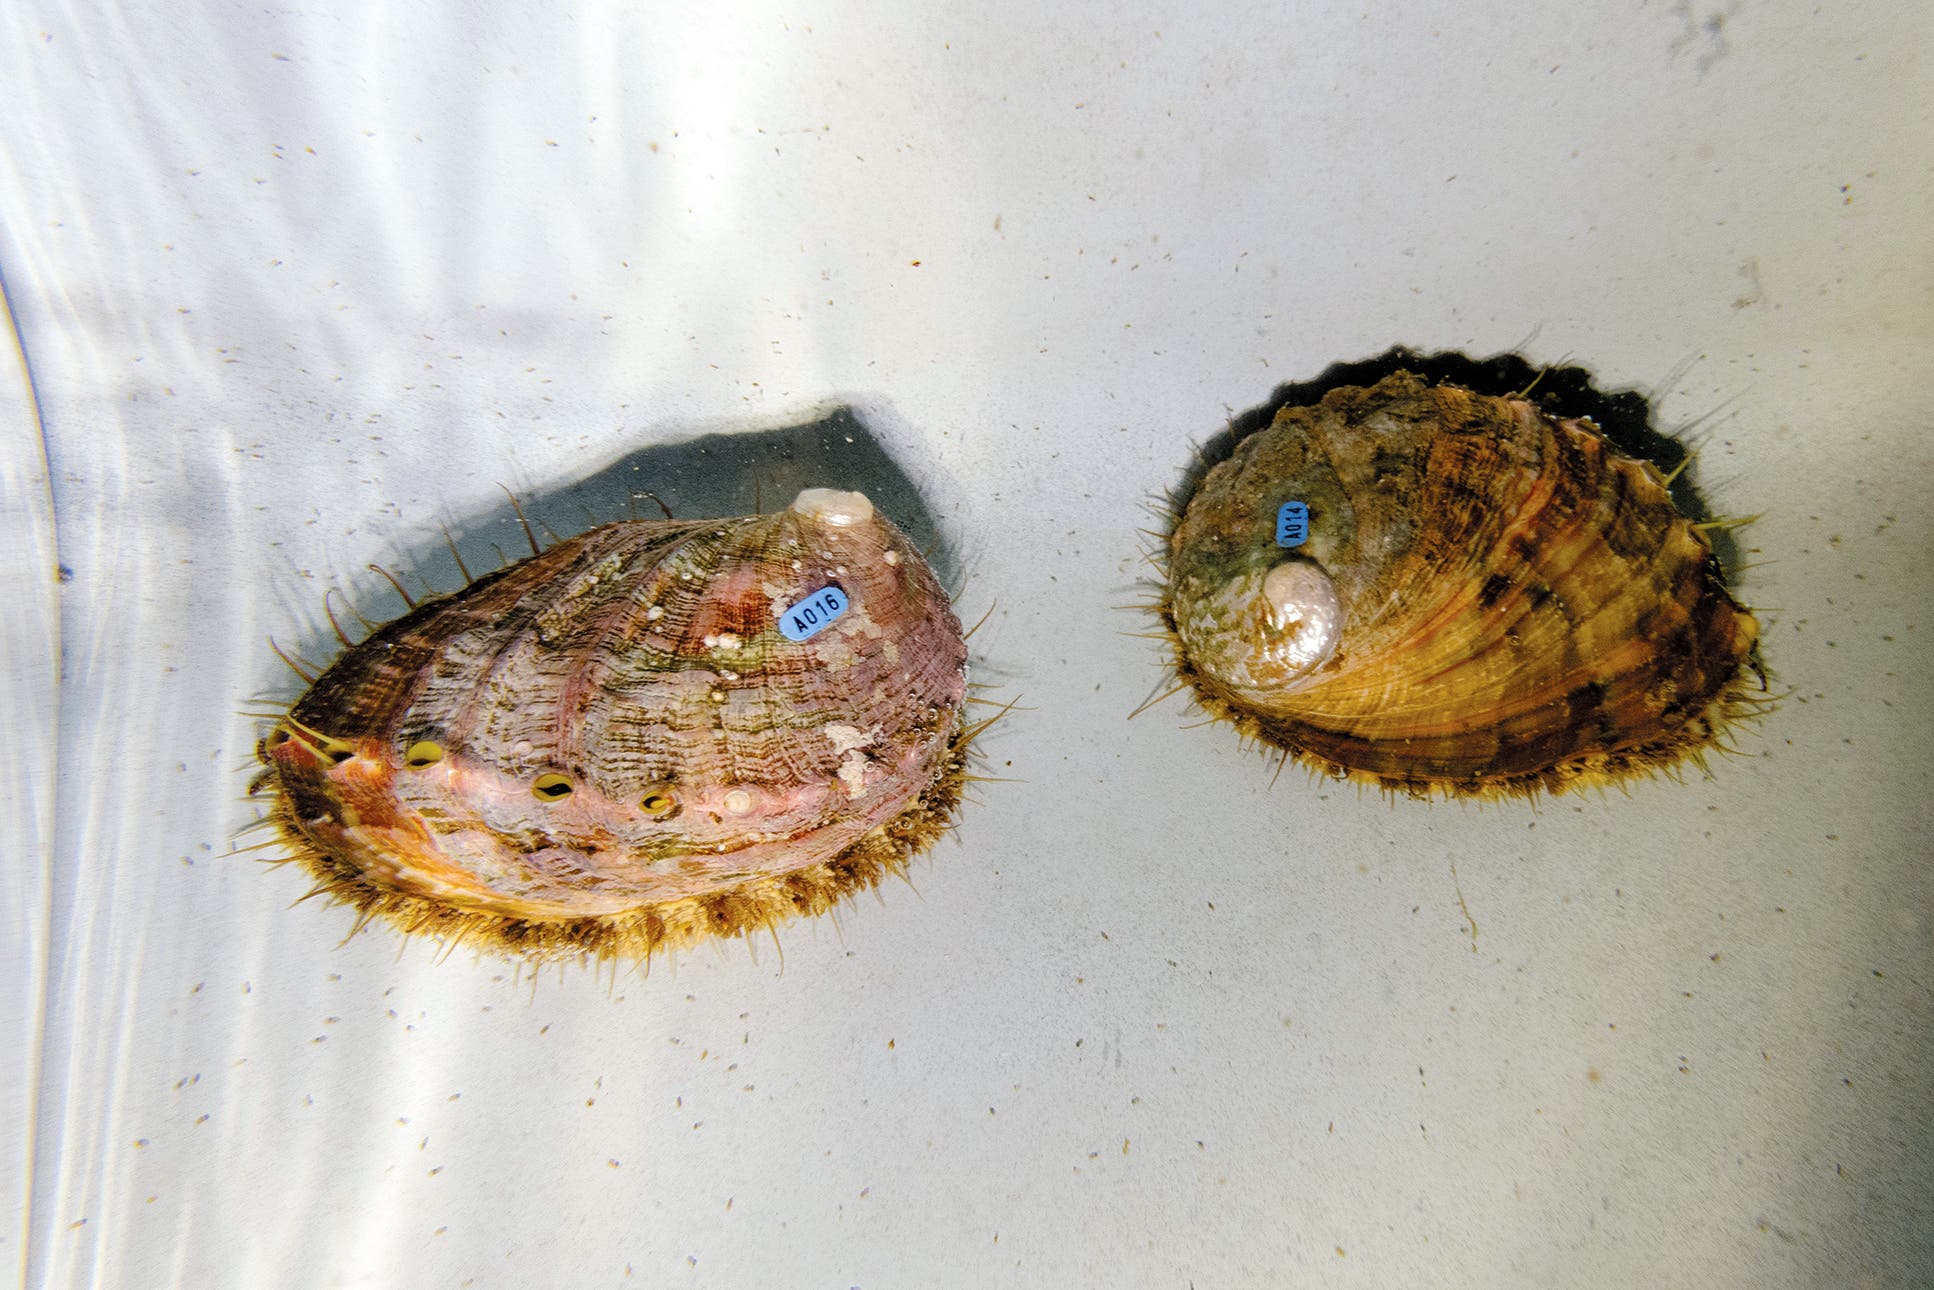 Meerohren zählen zu den Schnecken und werden von indigenen Küstenbewohnern in großen Mengen verzehrt. Die Mitarbeiter des Alutiiq Marine Pride Institute züchten sie zu Forschungszwecken.